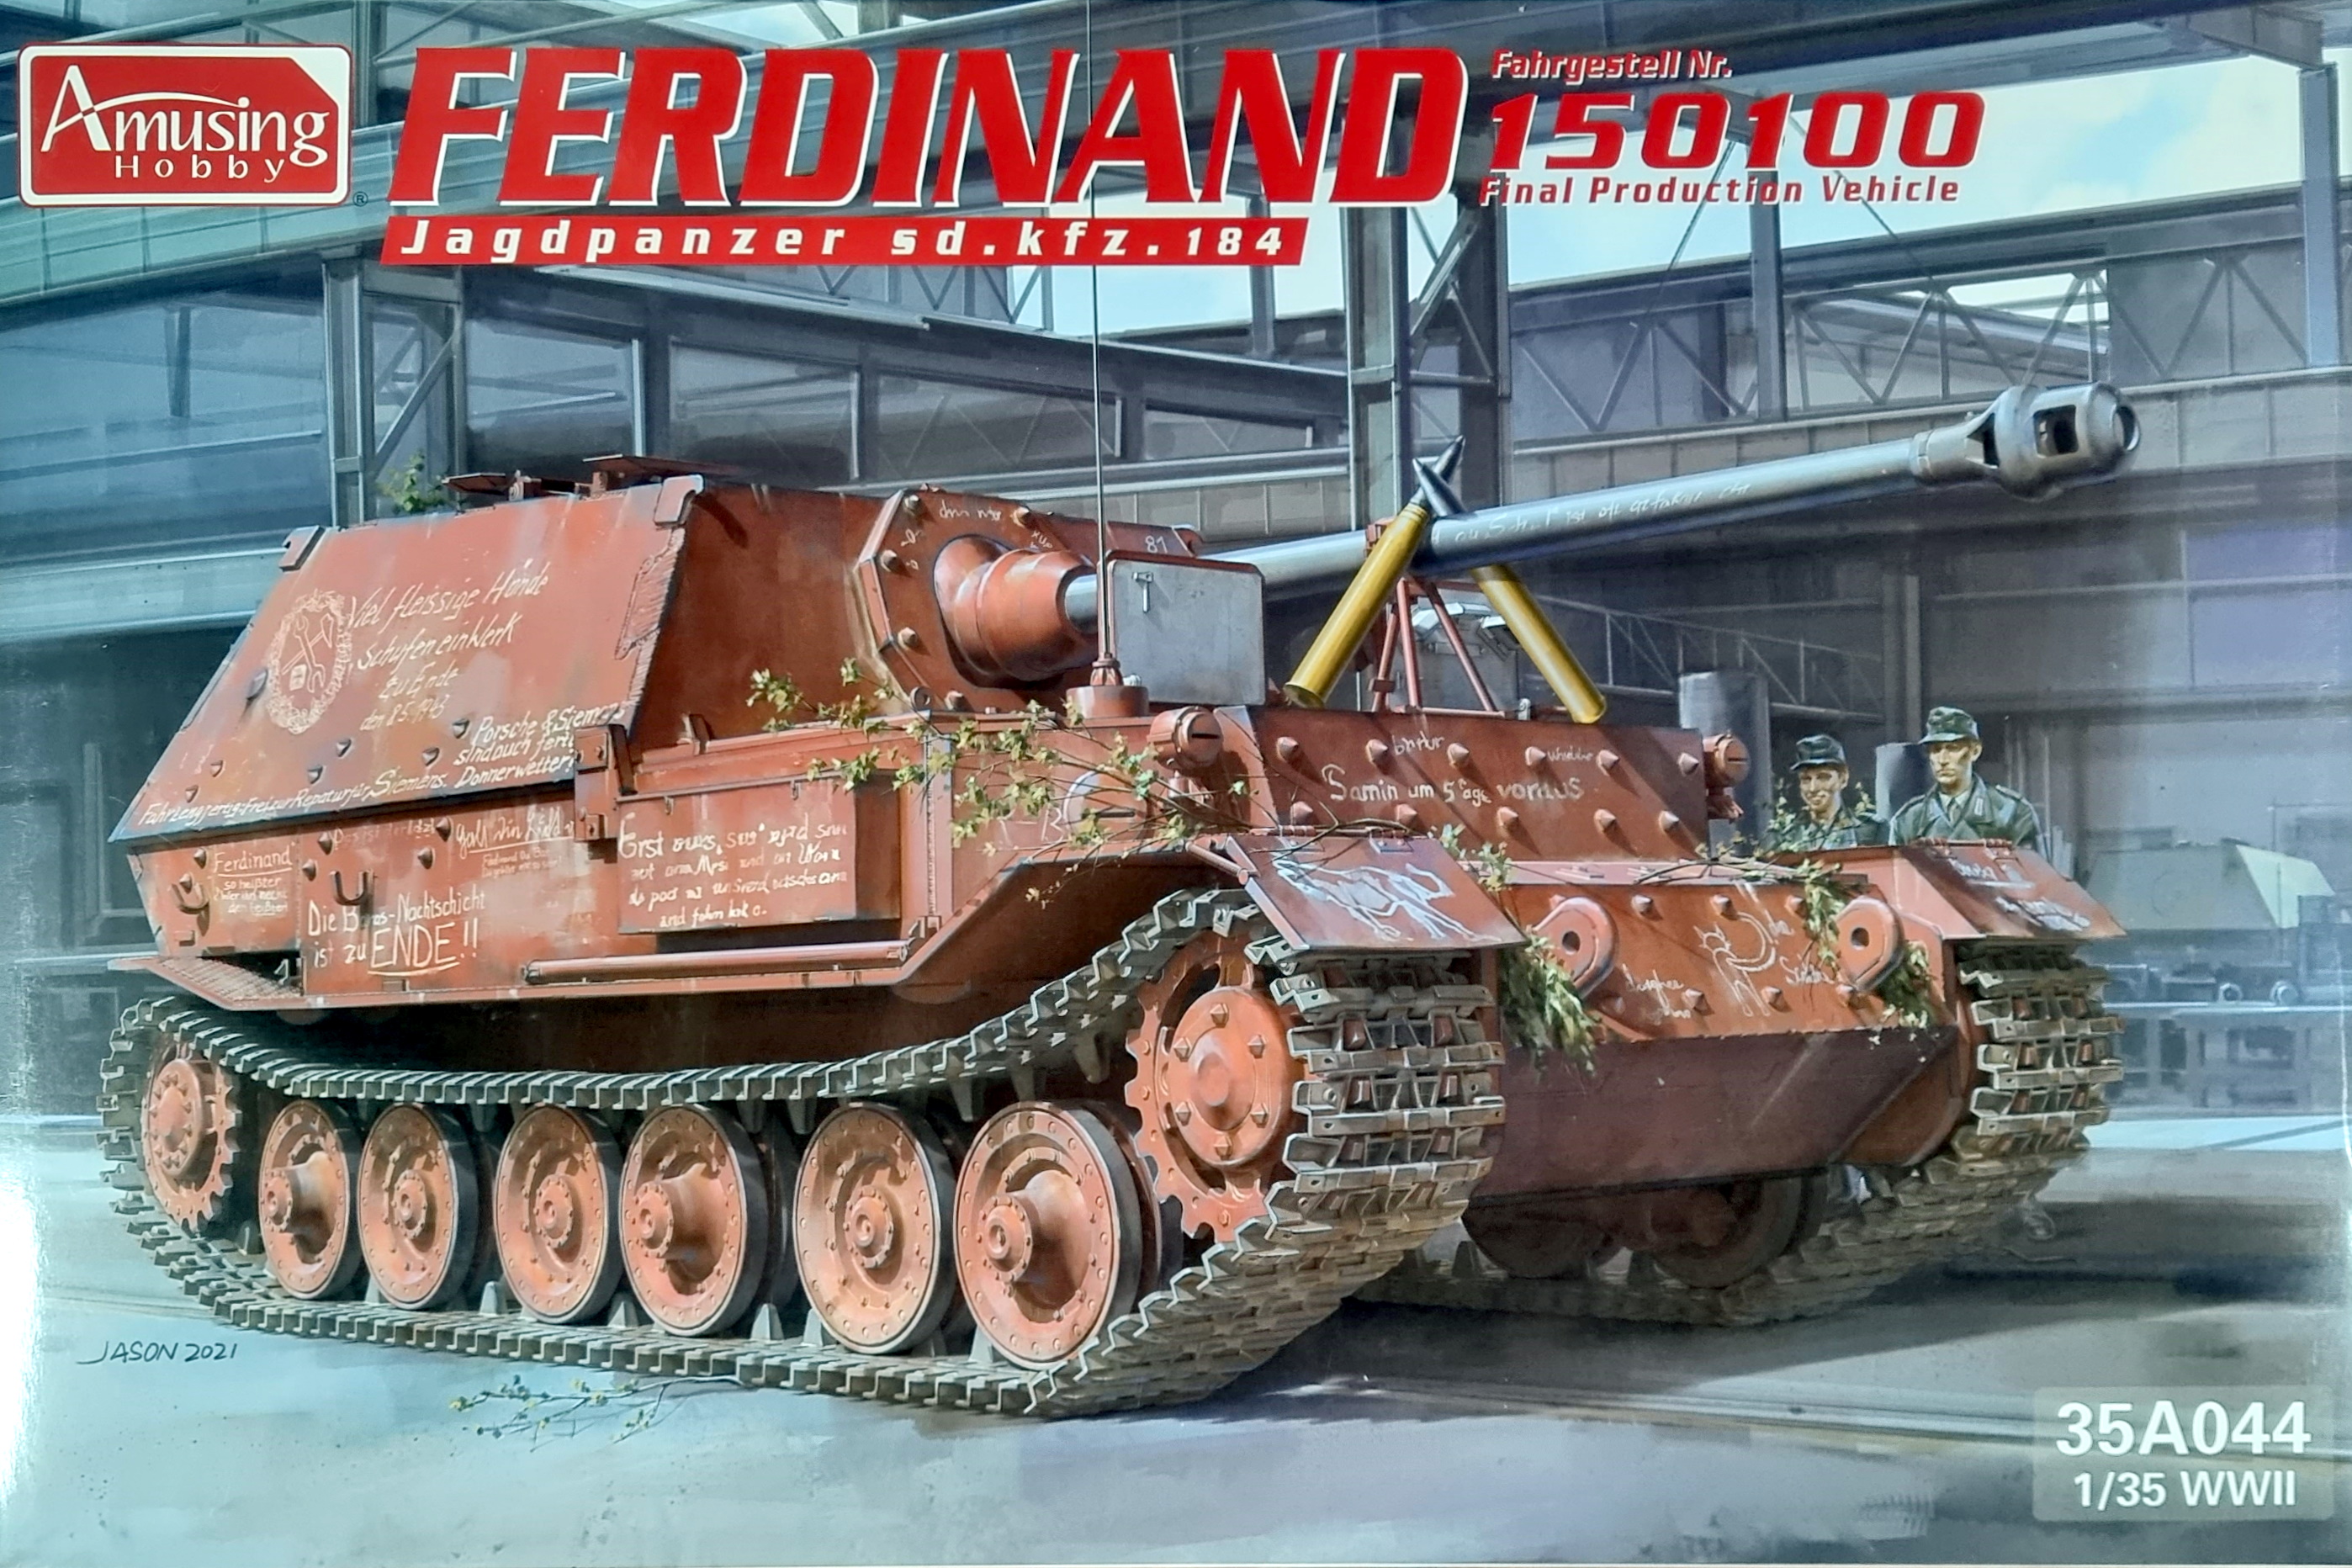 Ferdinand Fahrgestell Nr. 150100 - Jagdpanzer Sd.kfz.184